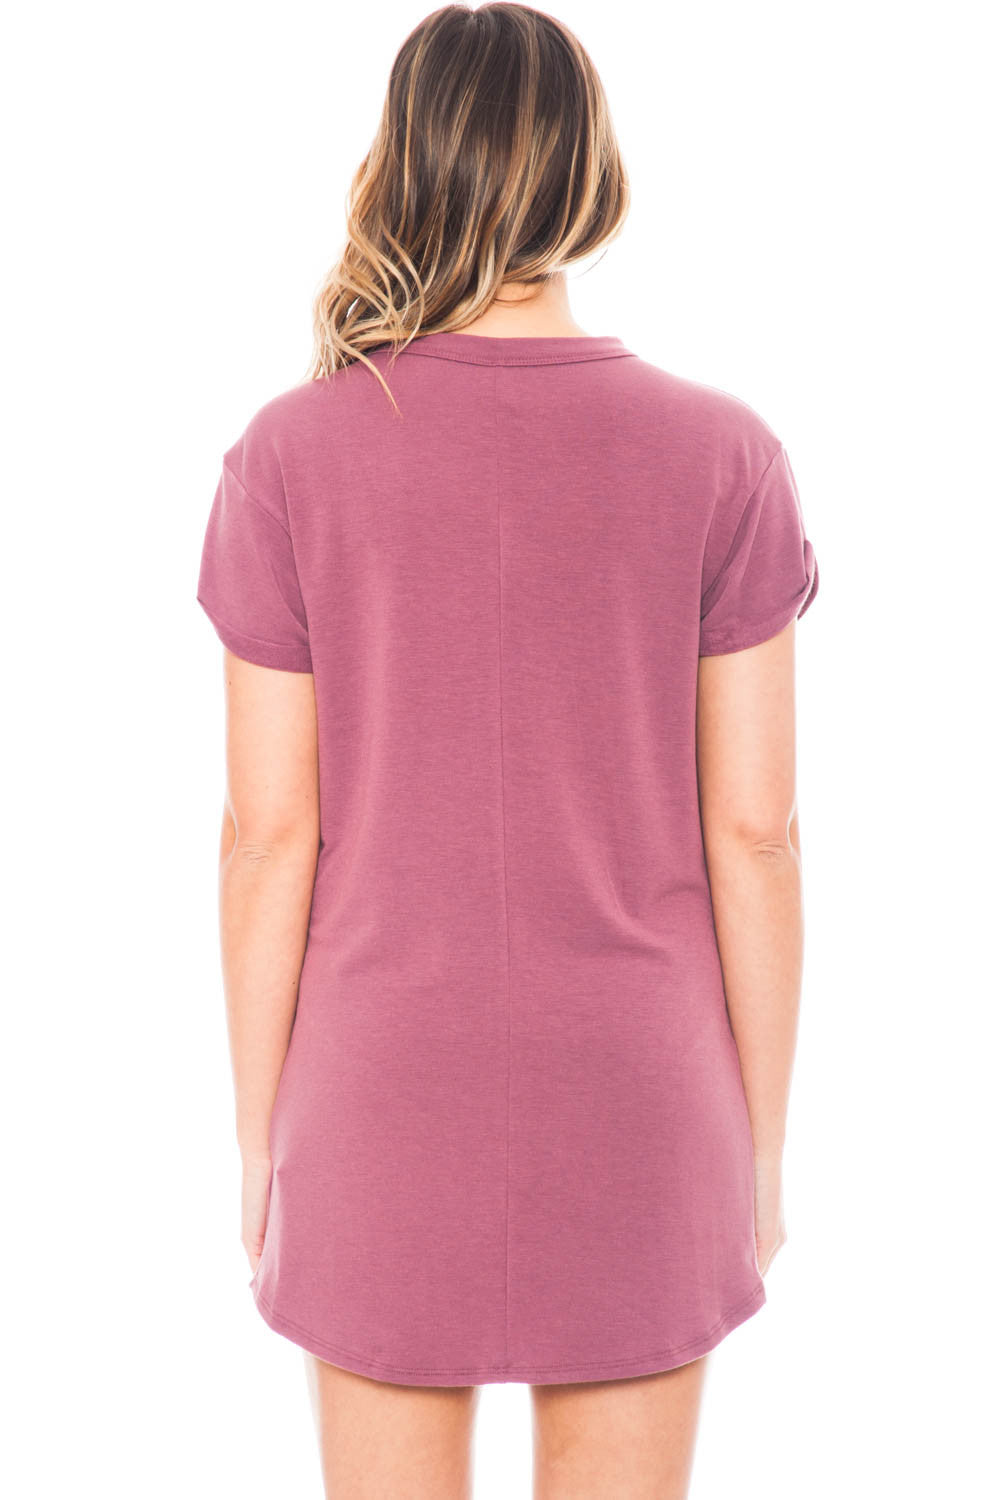 Dress - Short Sleeve Choker T-Shirt Dress